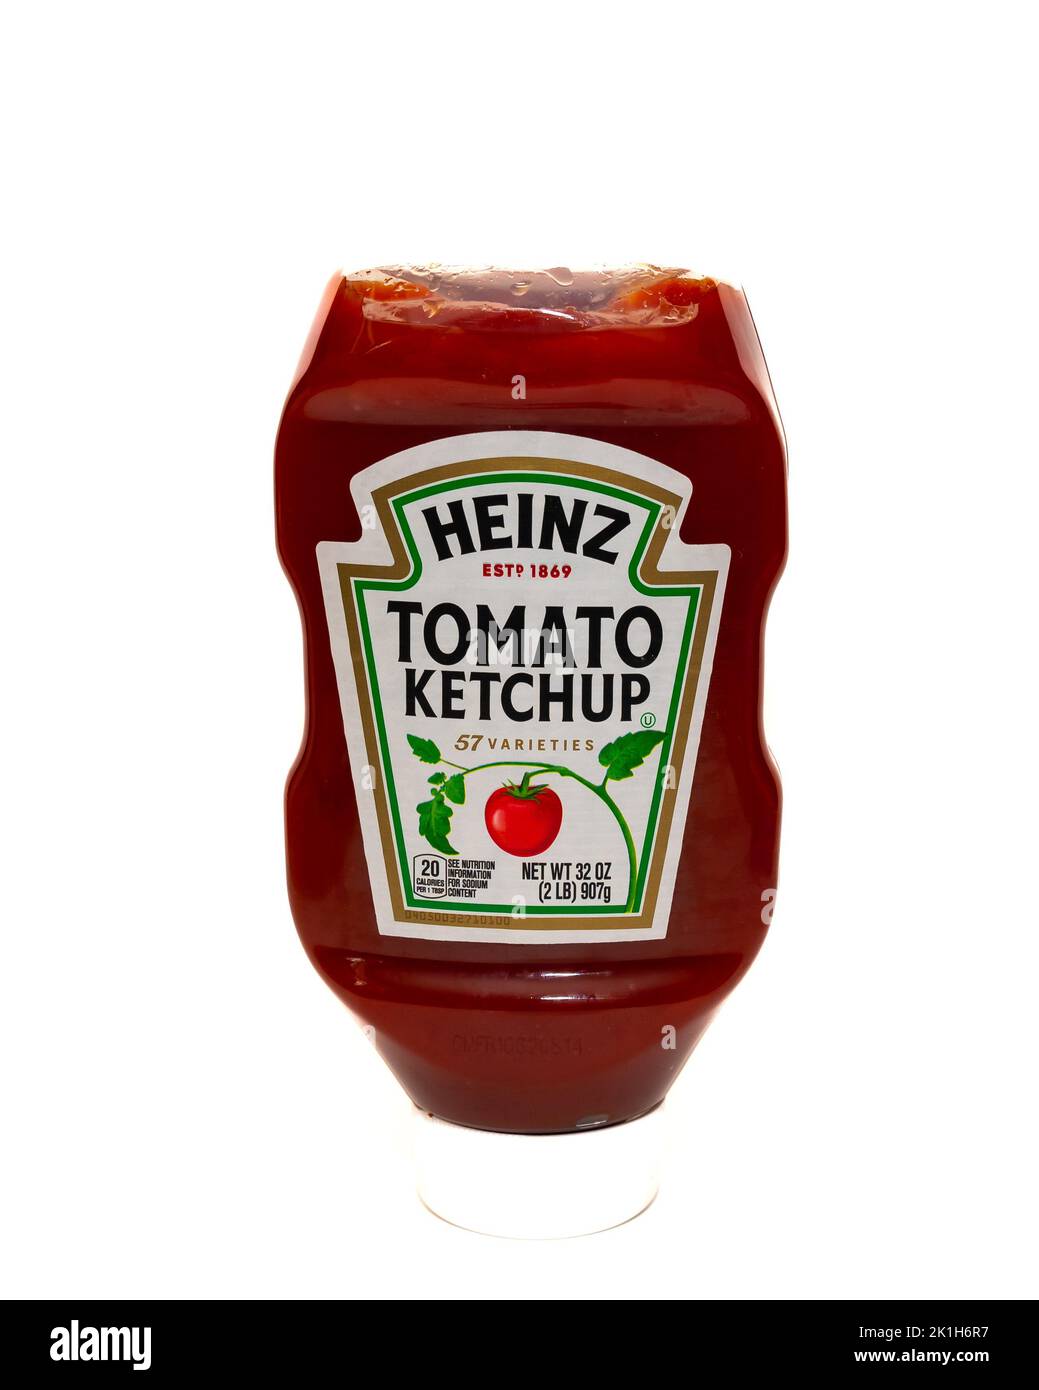 Une bouteille en plastique de ketchup Heinz Tomato épaisse et riche faite seulement des meilleures tomates mûres rouges. Banque D'Images